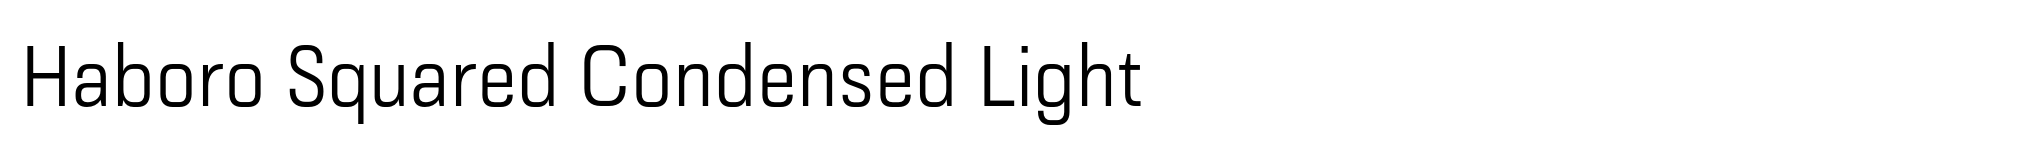 Haboro Squared Condensed Light image